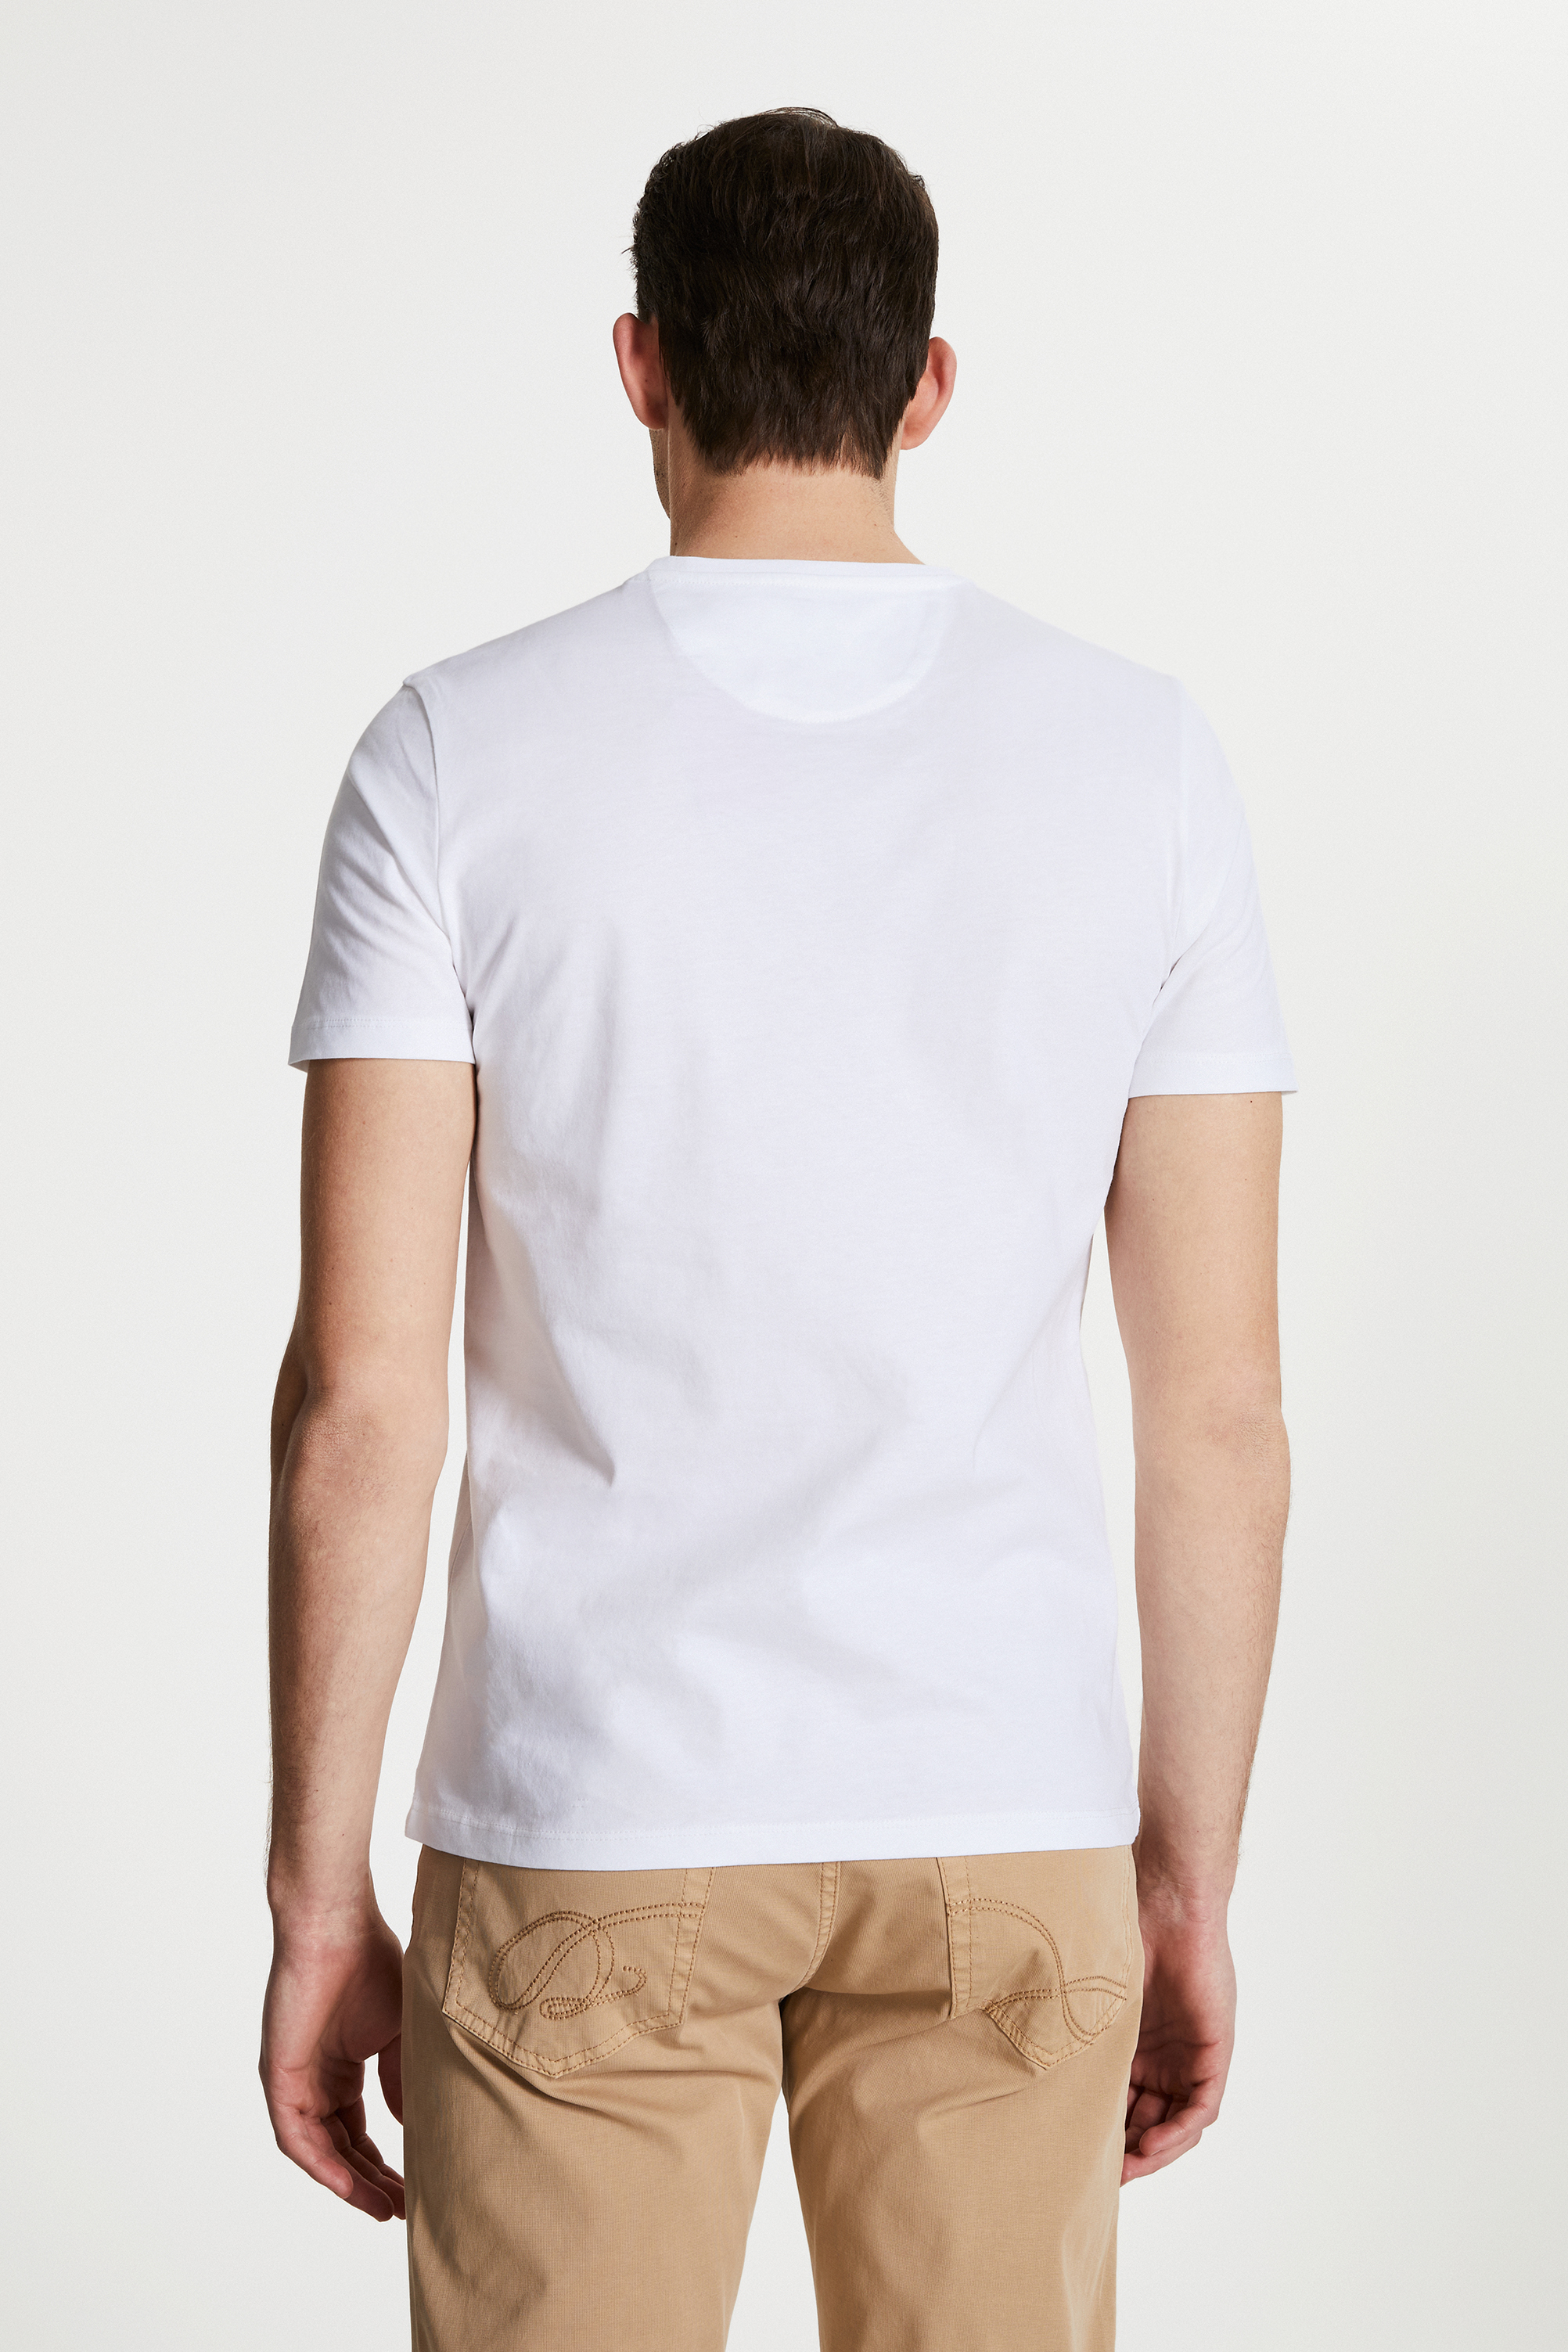 Damat Tween Damat Beyaz Çizgili Baskılı T-shirt. 1